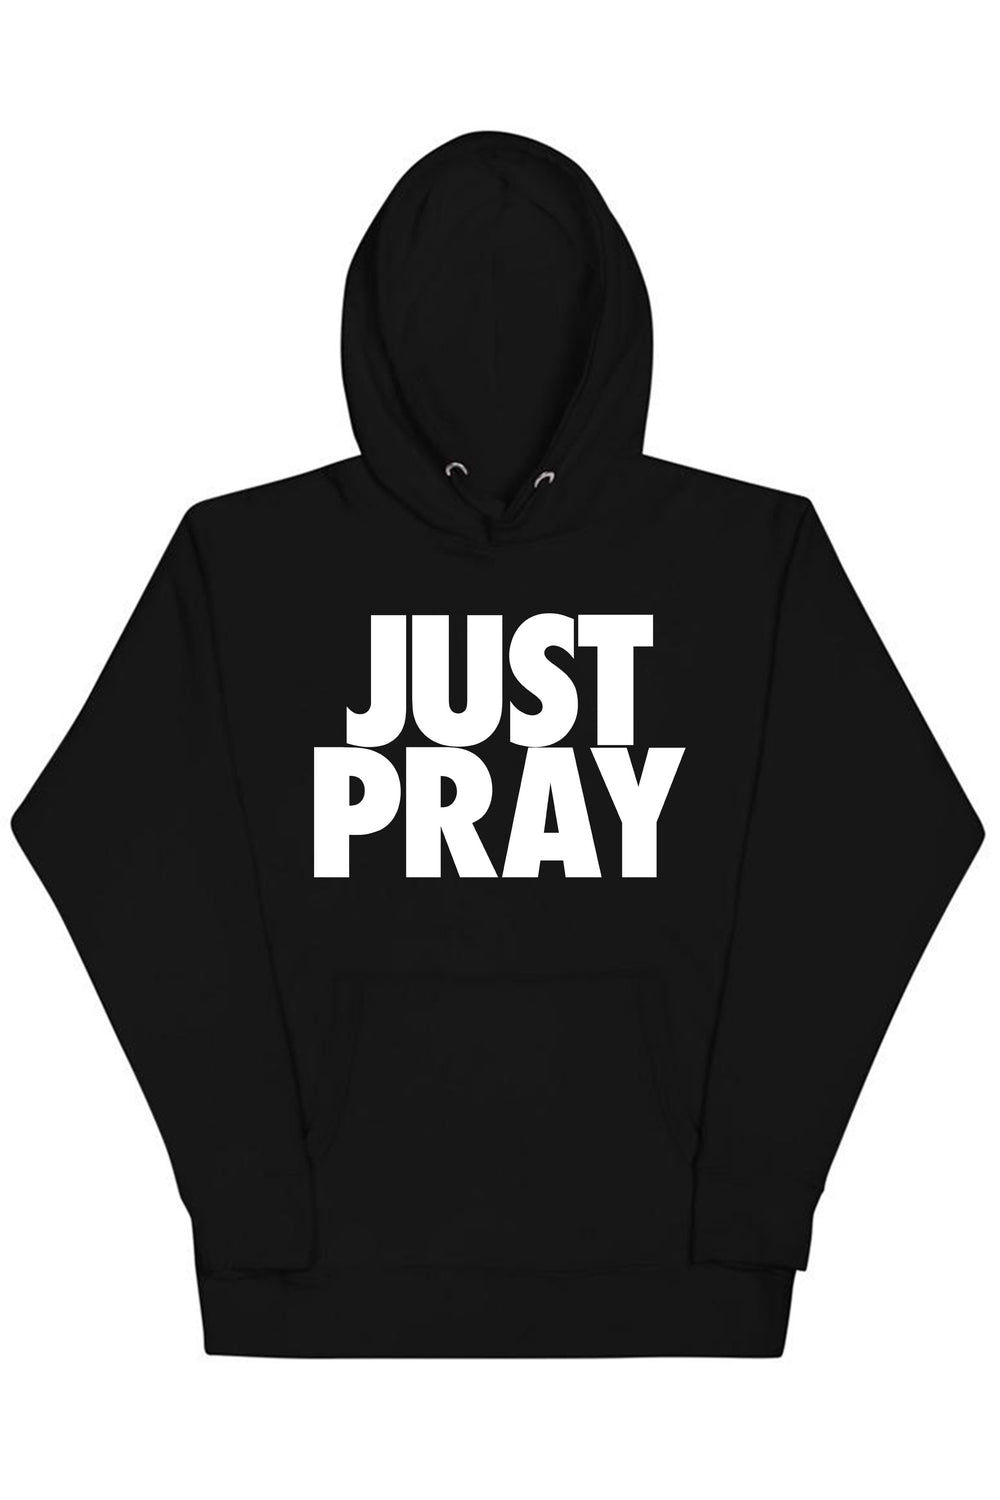 Just Pray Hoodie (White Logo) - Zamage